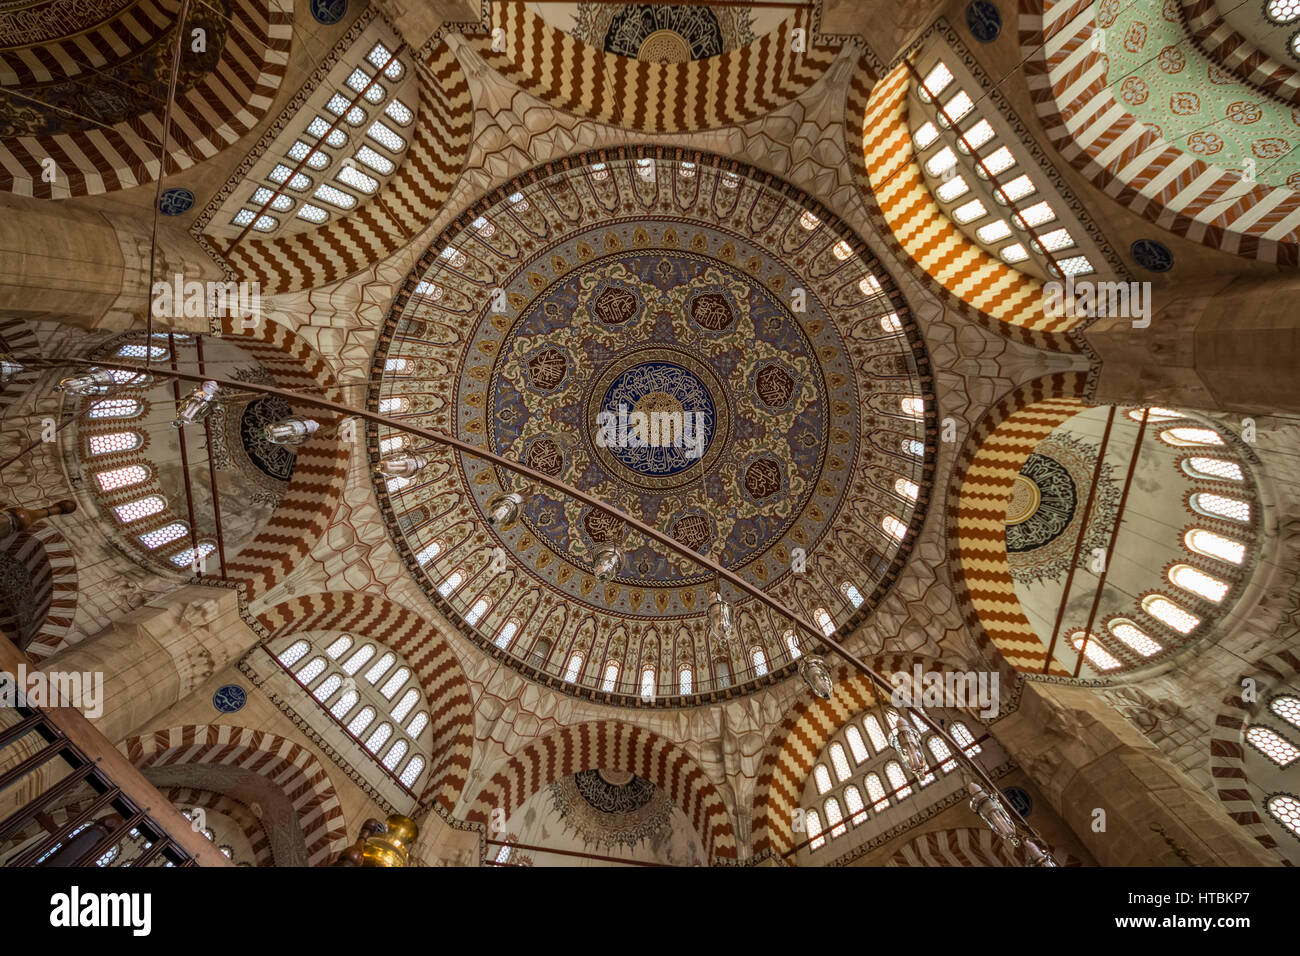 Innenansicht der zentralen Kuppel und es unterstützt Struktur von Zwickeln, Bögen und semi-Kuppeln der Selimiye Moschee; Edirne, Türkei Stockfoto